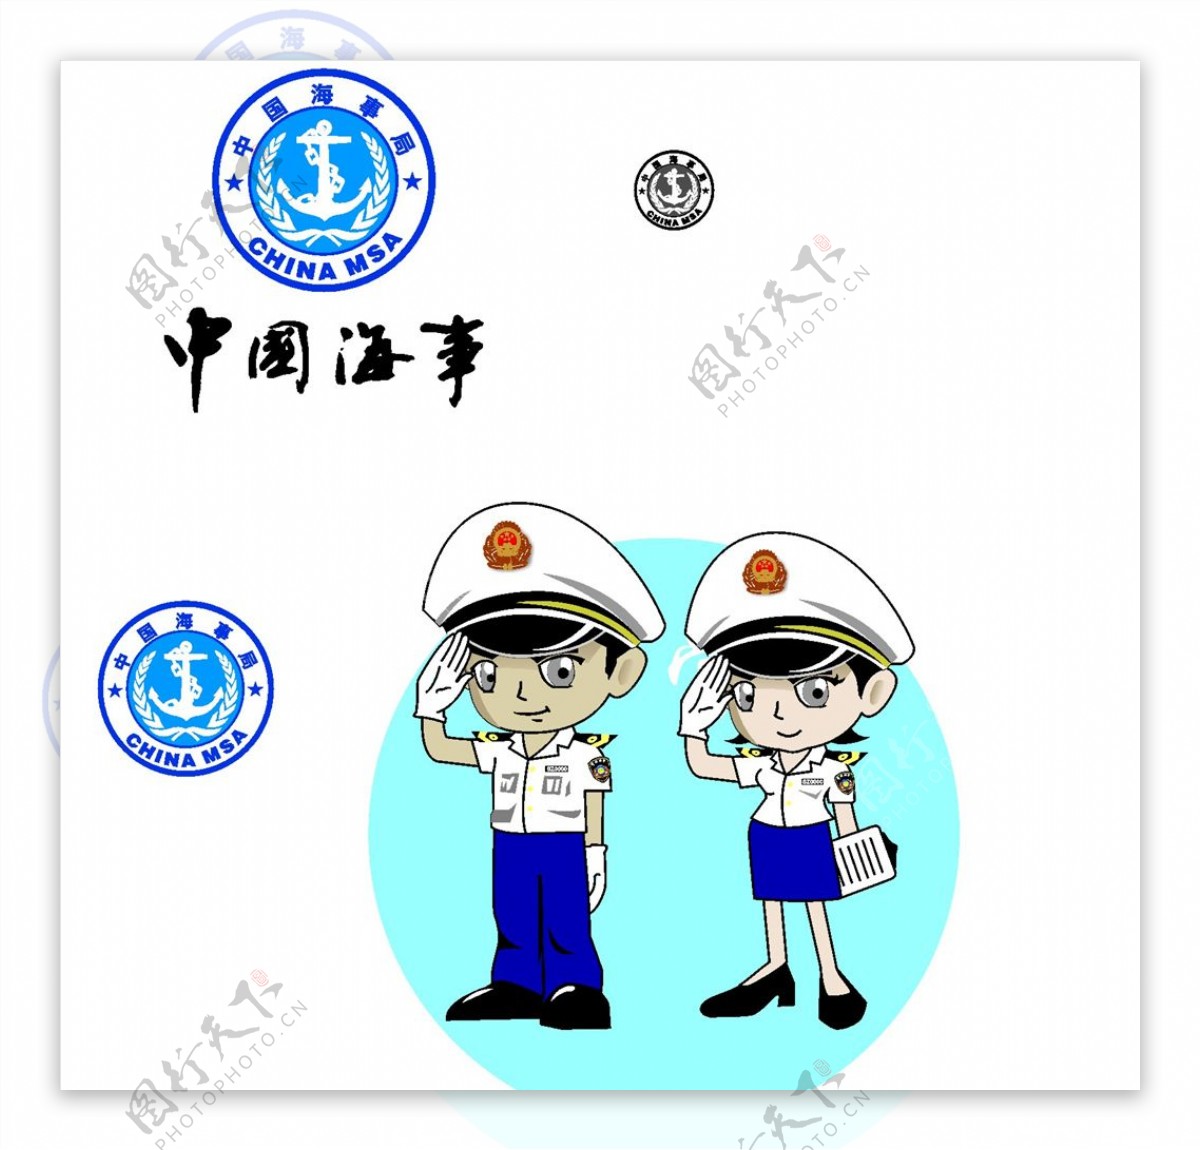 中国海事